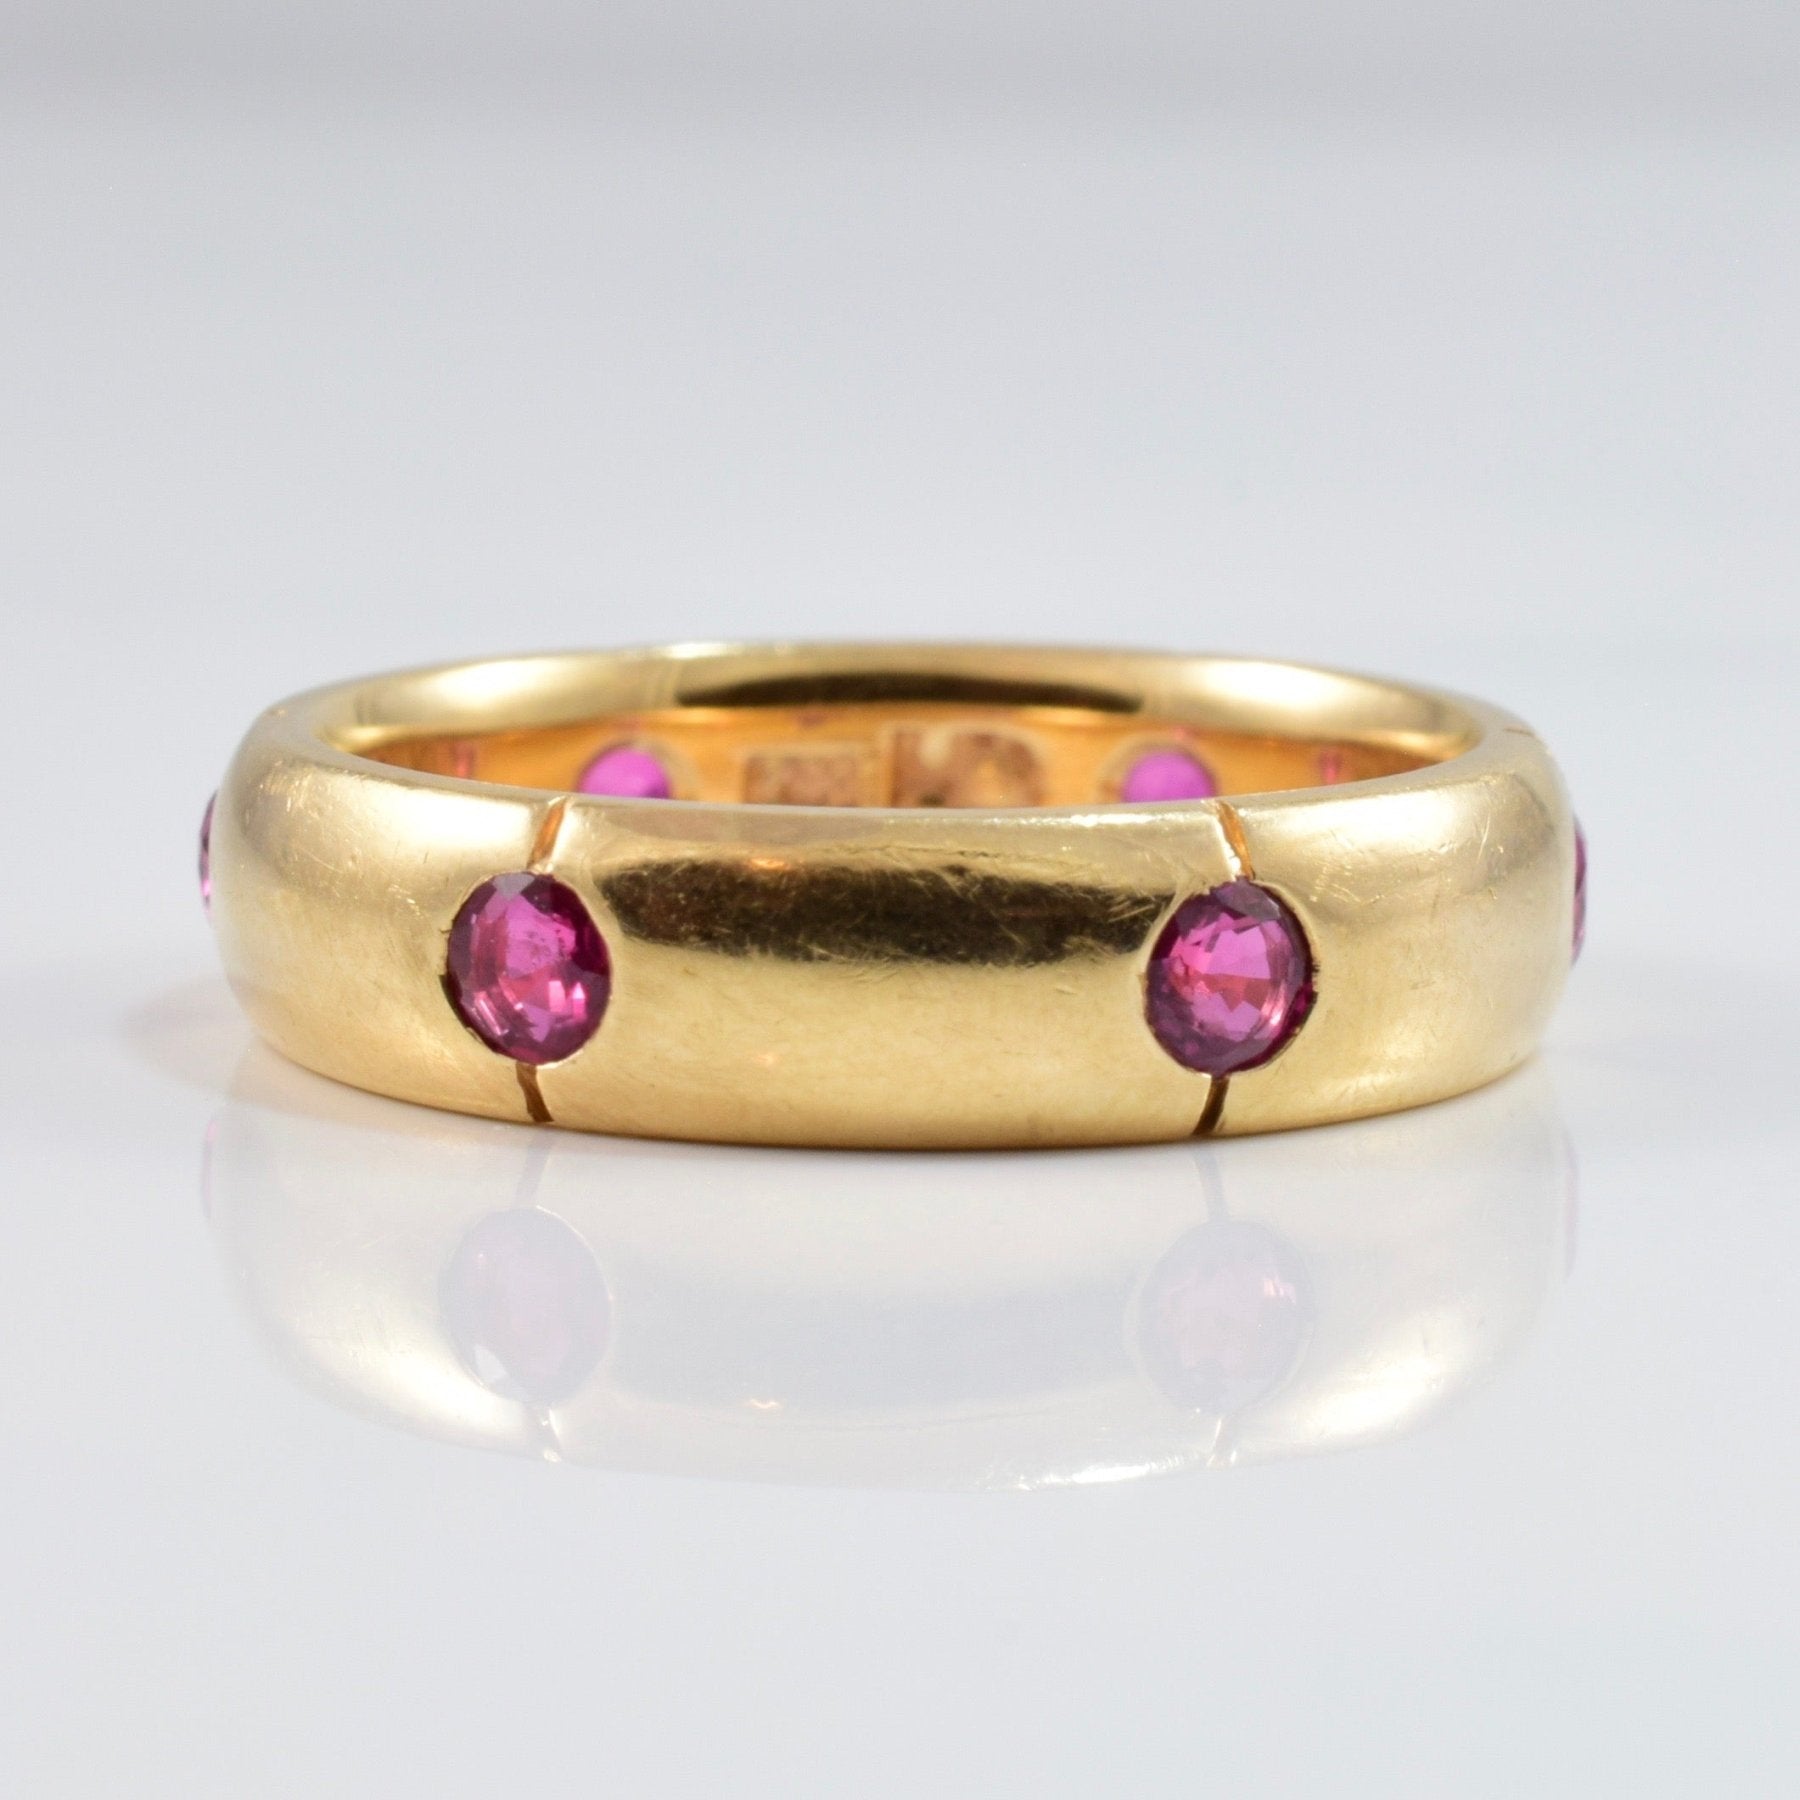 'Chanel' Vintage Gypsy Set Ruby Ring | SZ 6.75 | - 100 Ways